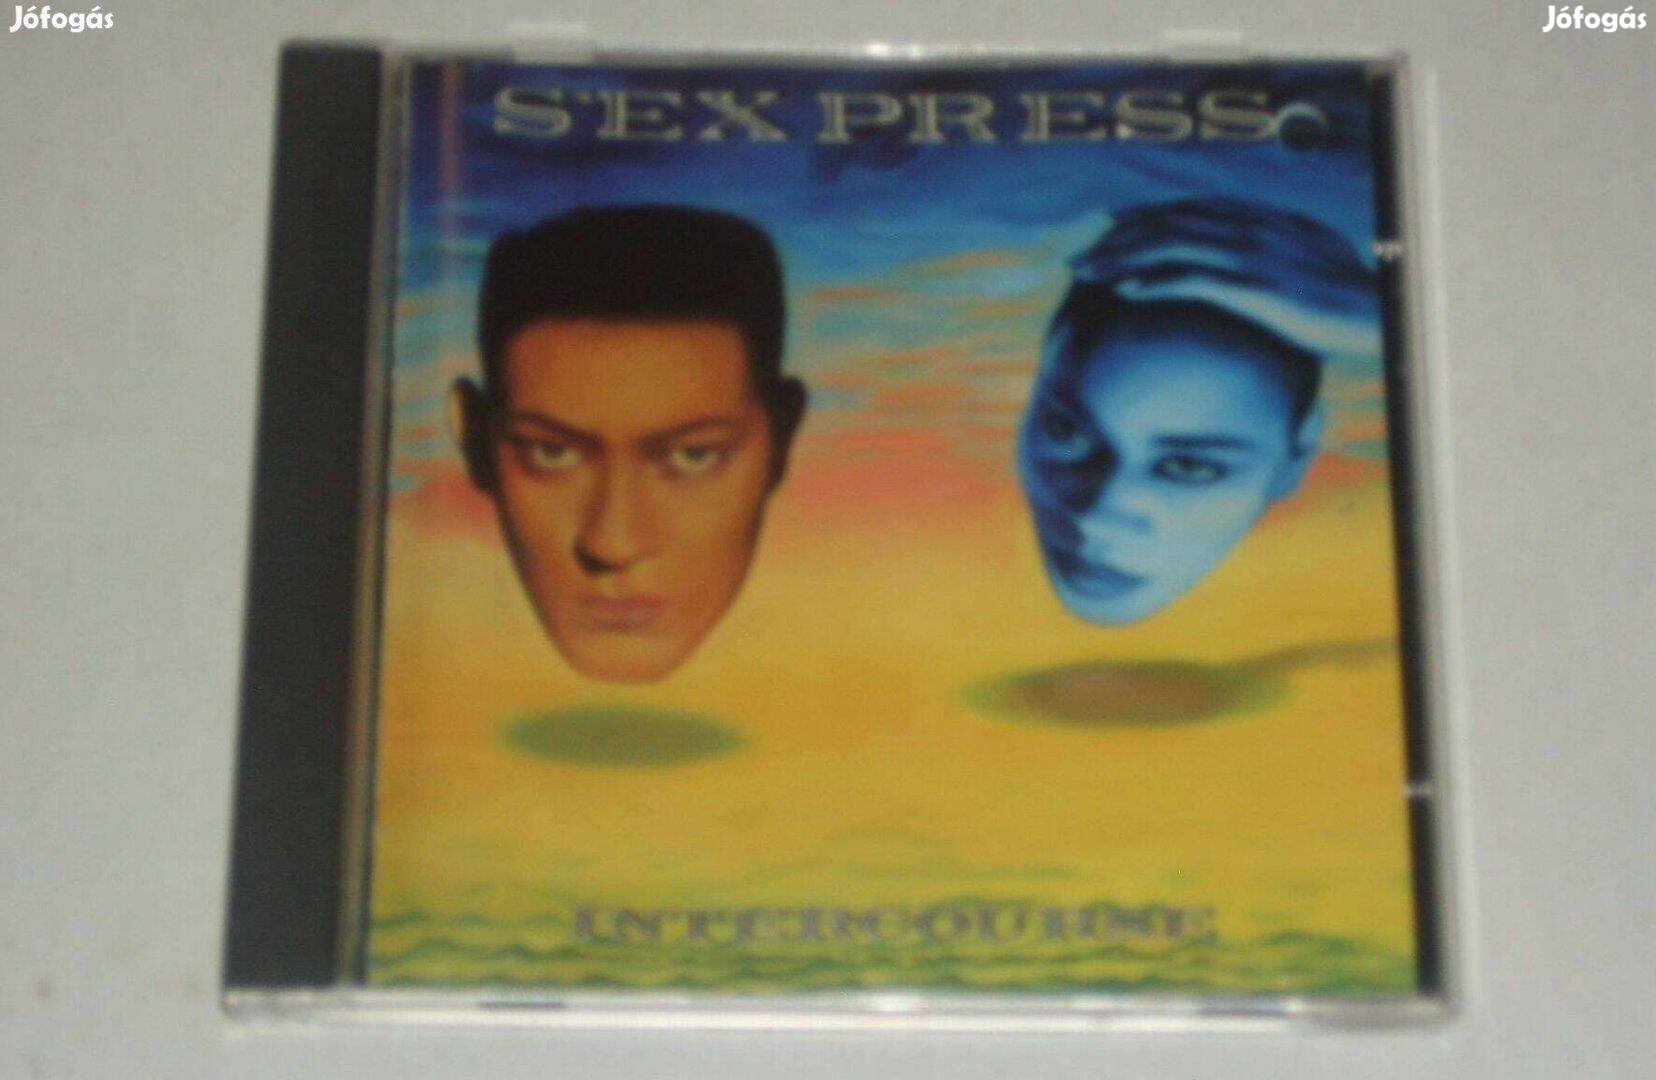 S'Express - Intercourse CD USA